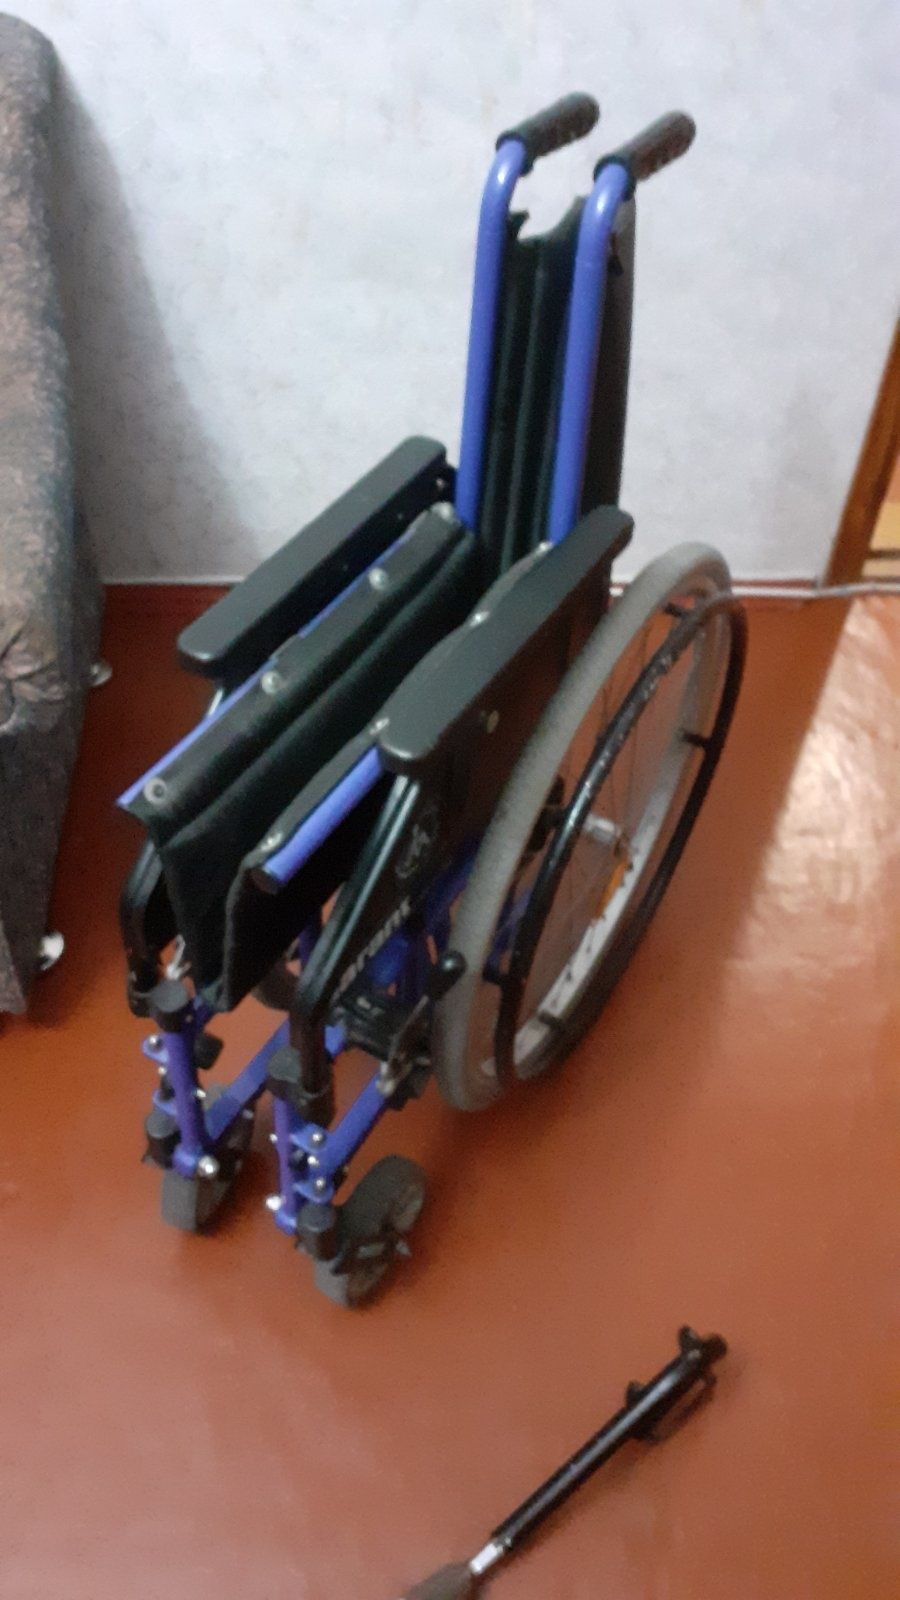 Инвалидная коляска invacare garant, ходунки, костыли, трость